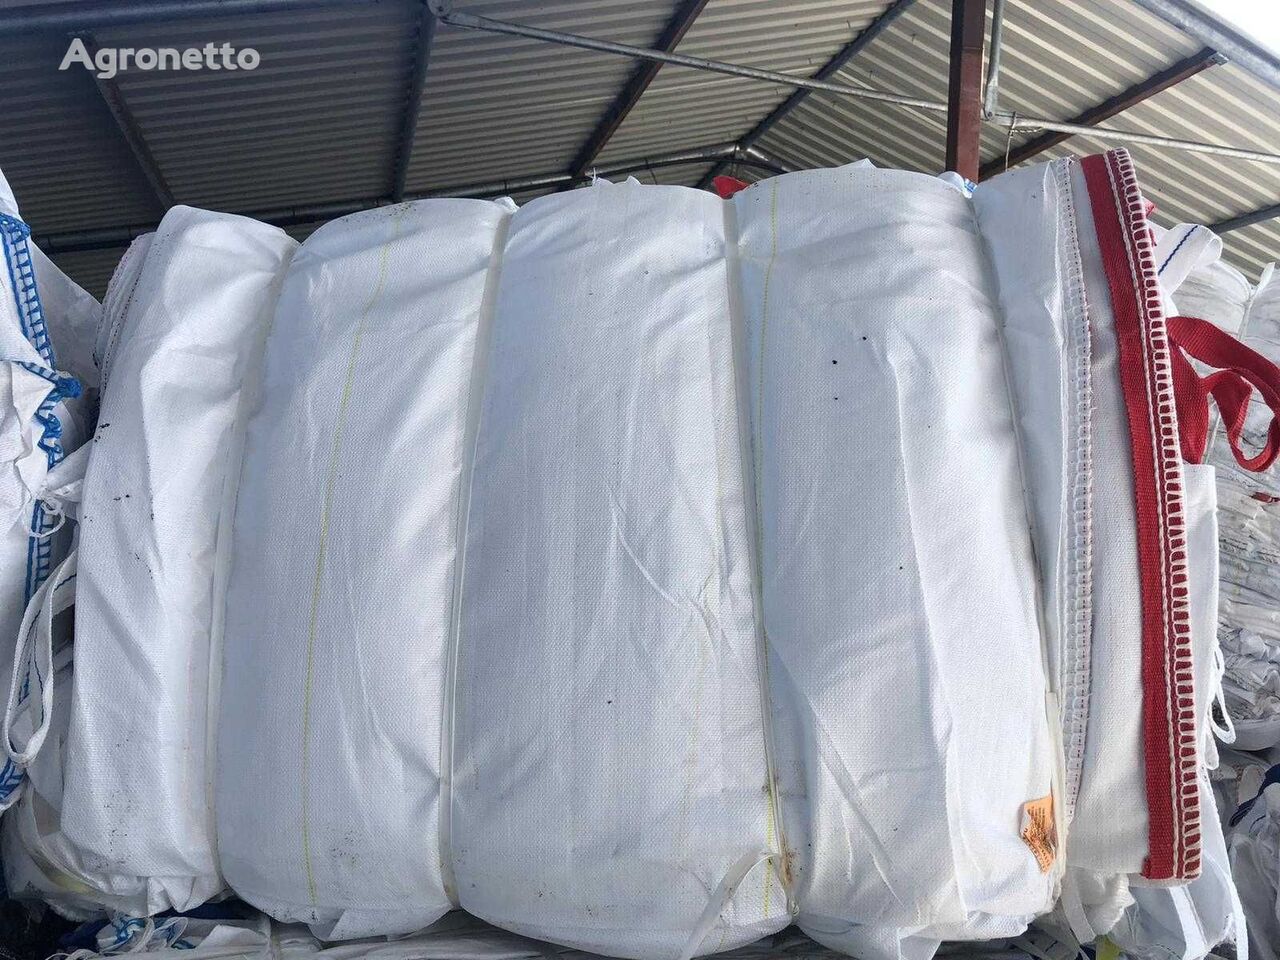 Big bags para produtos agrícolas, big bag 24, 1500kg